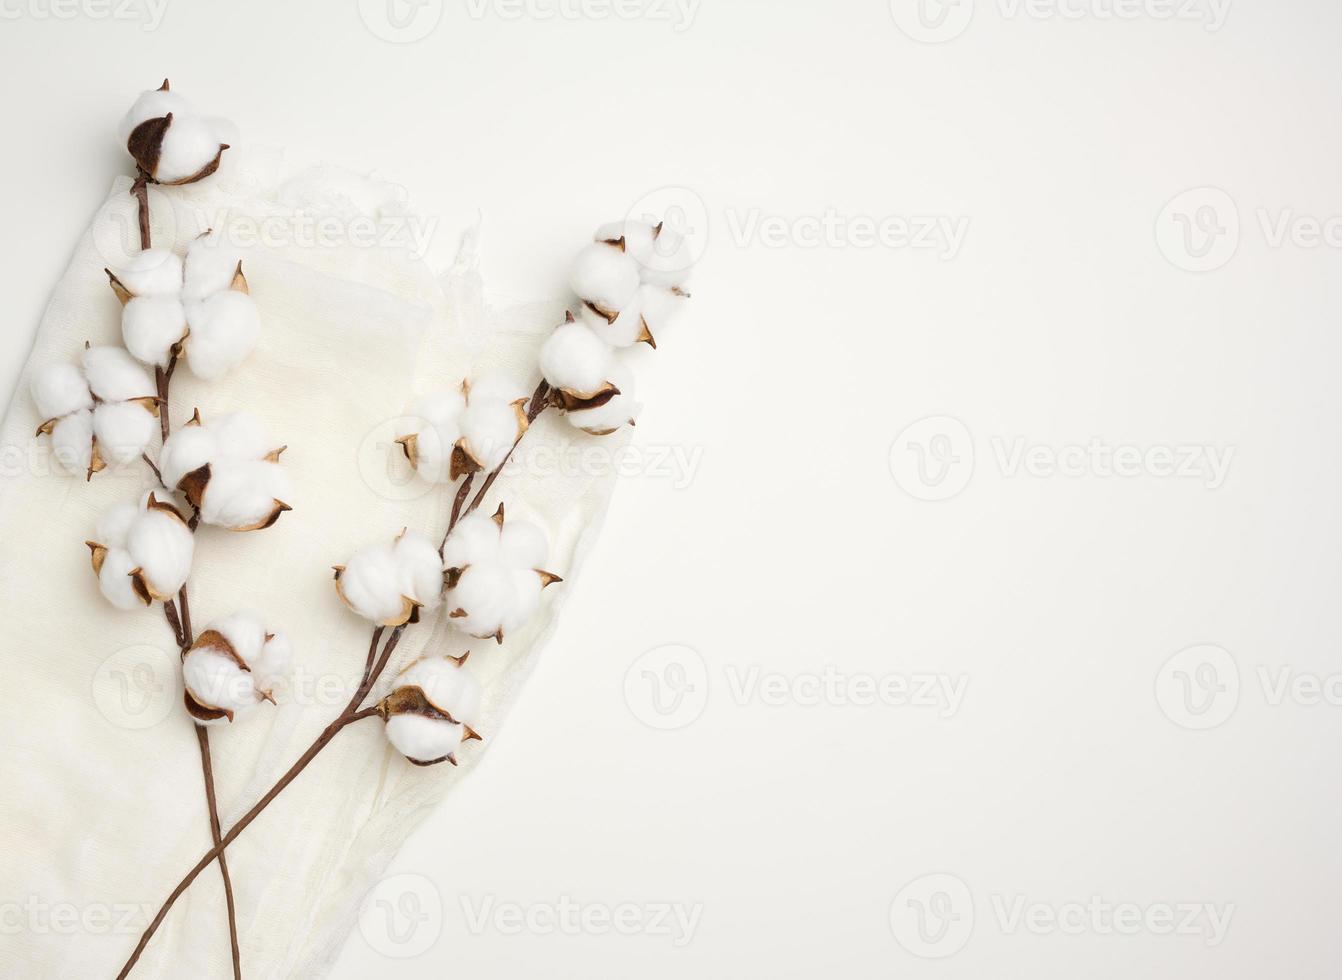 fiori di cotone su sfondo chiaro. foto naturale 4409927 Stock Photo su  Vecteezy